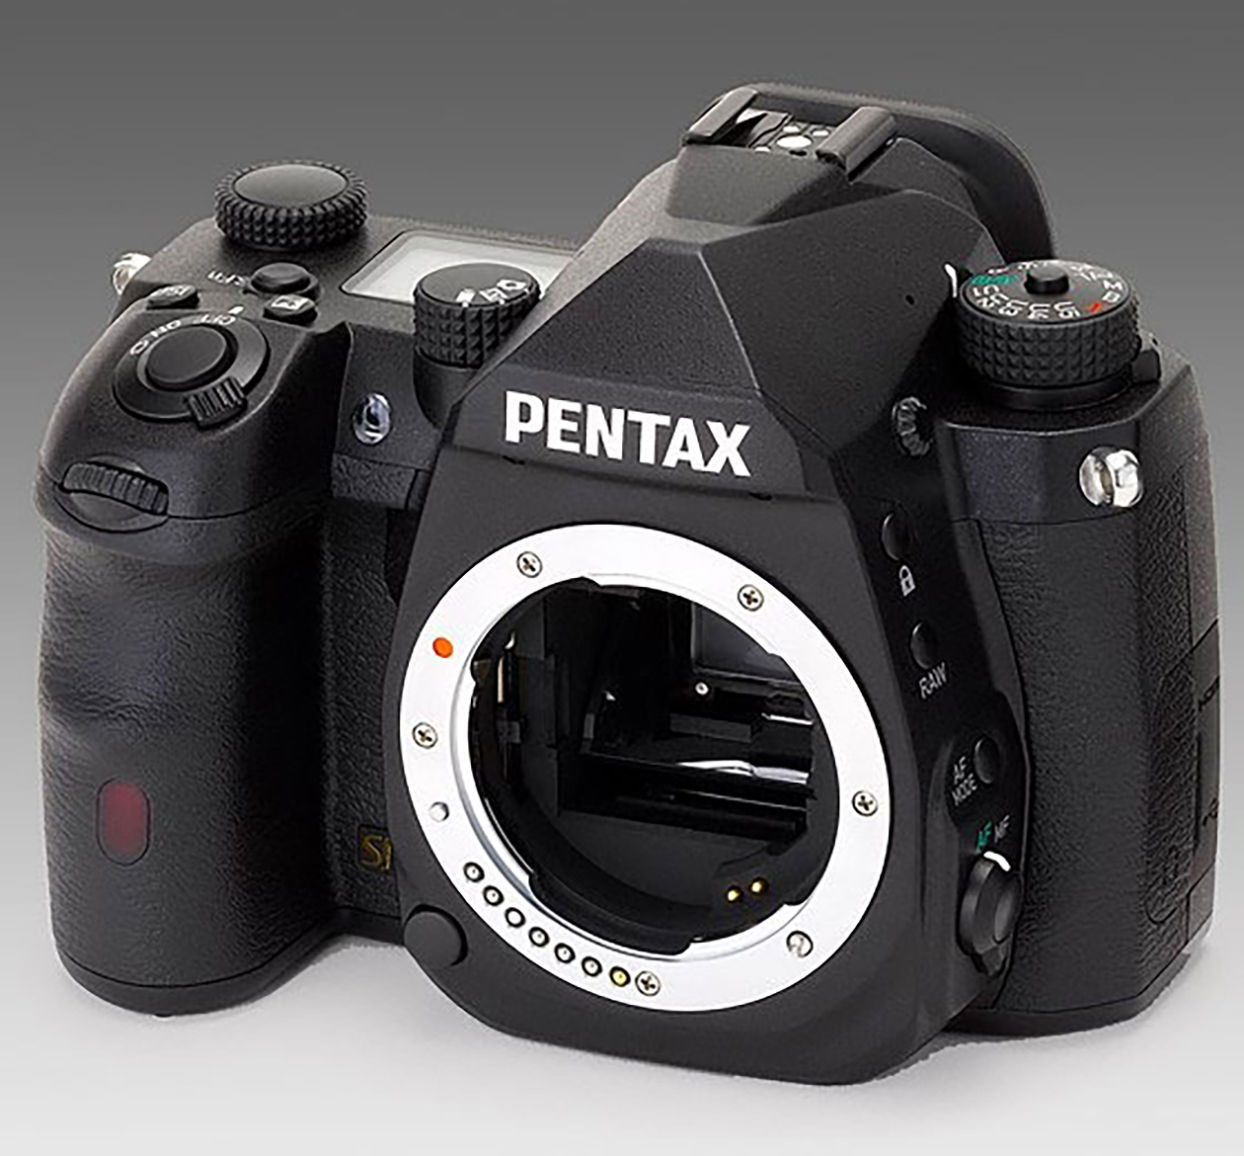 pentax-upcoming-DSLR-camera-image.jpg